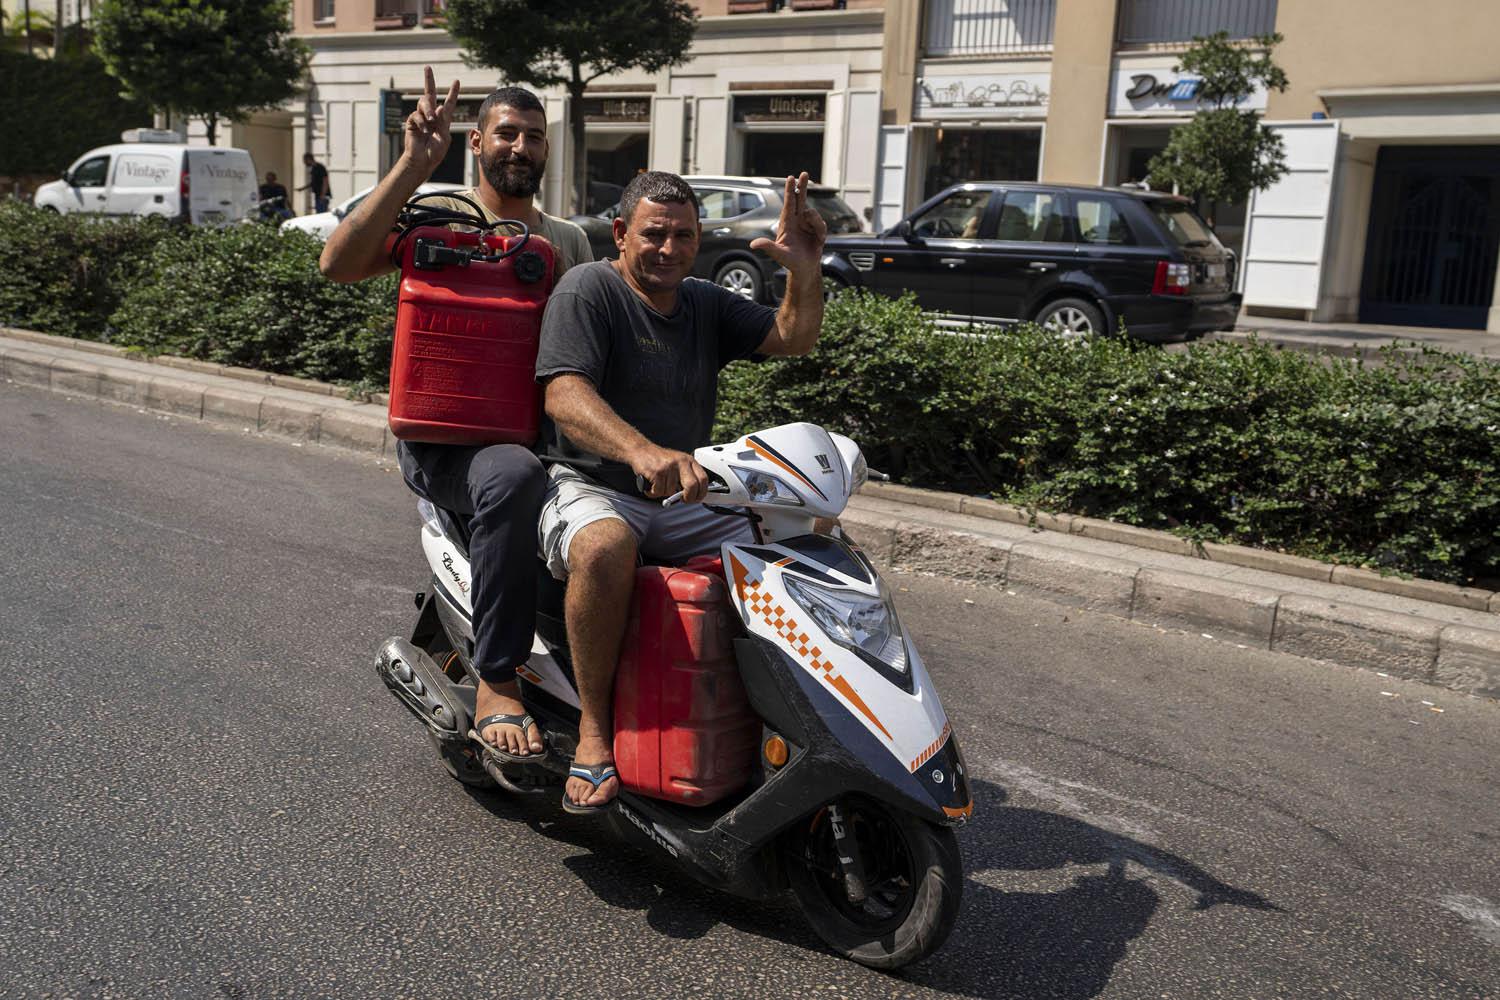 صيادان لبنانيان على دراجة نارية يحملان وقودا لقاربهما